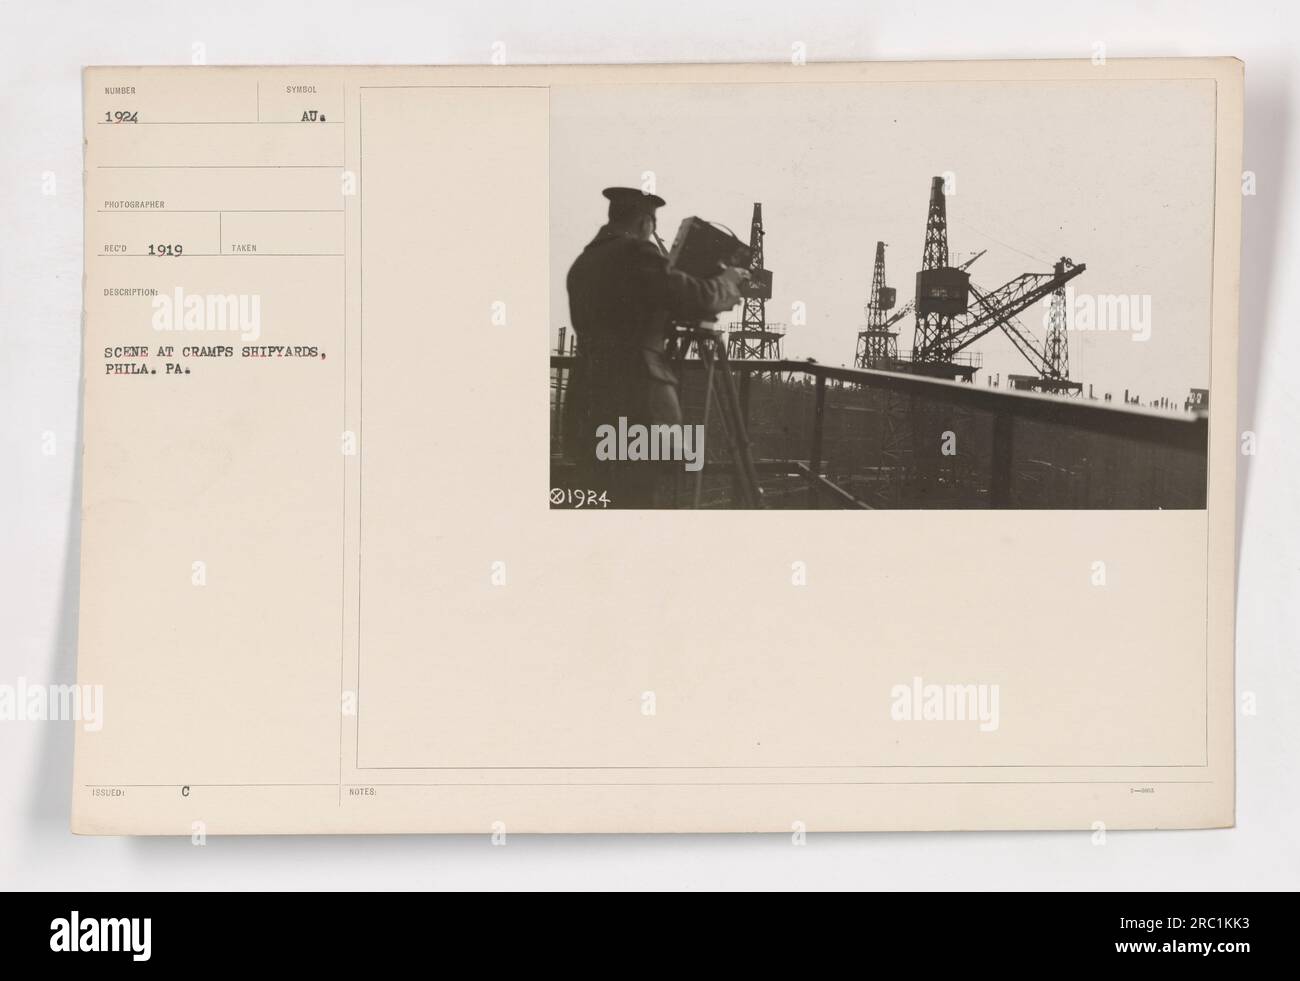 Szene in Cramps Schiffswerften in Philadelphia, Pennsylvania. Das Foto zeigt die Werften während des 1. Weltkriegs Dieses spezielle Bild ist als 111-SC-1924 katalogisiert und wurde von Red 1919 gemäß den Notizen auf dem Foto aufgenommen. Stockfoto